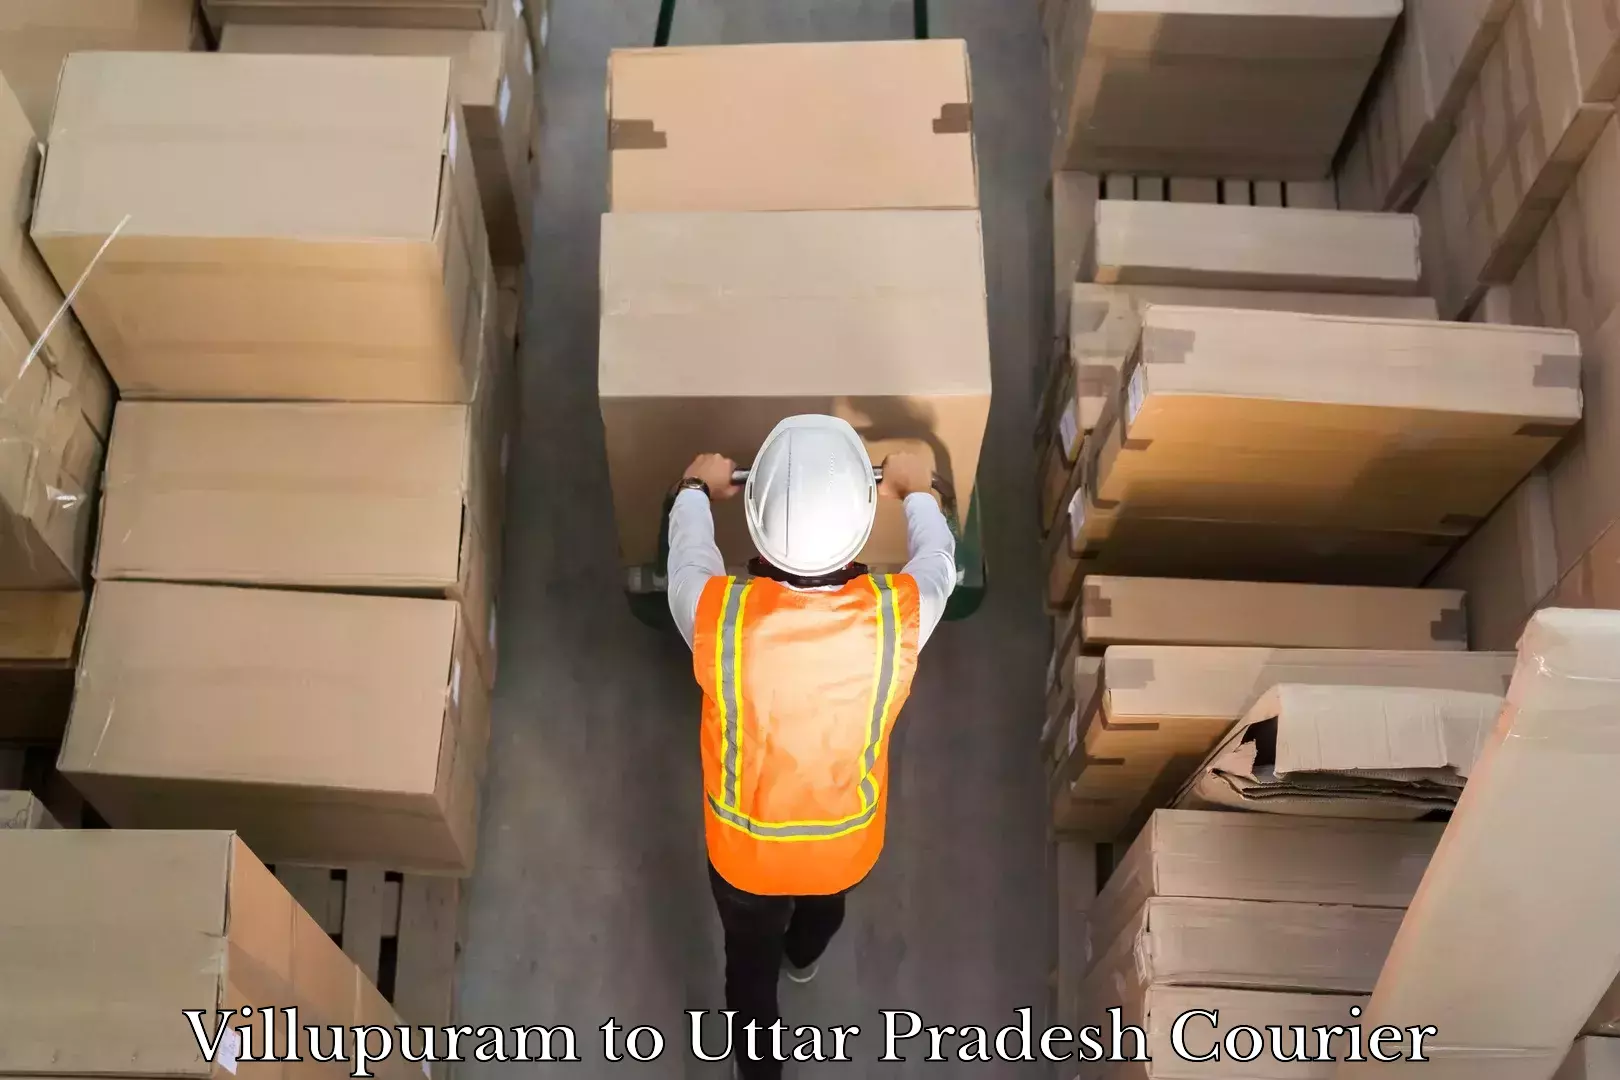 Cash on delivery service Villupuram to Uttar Pradesh